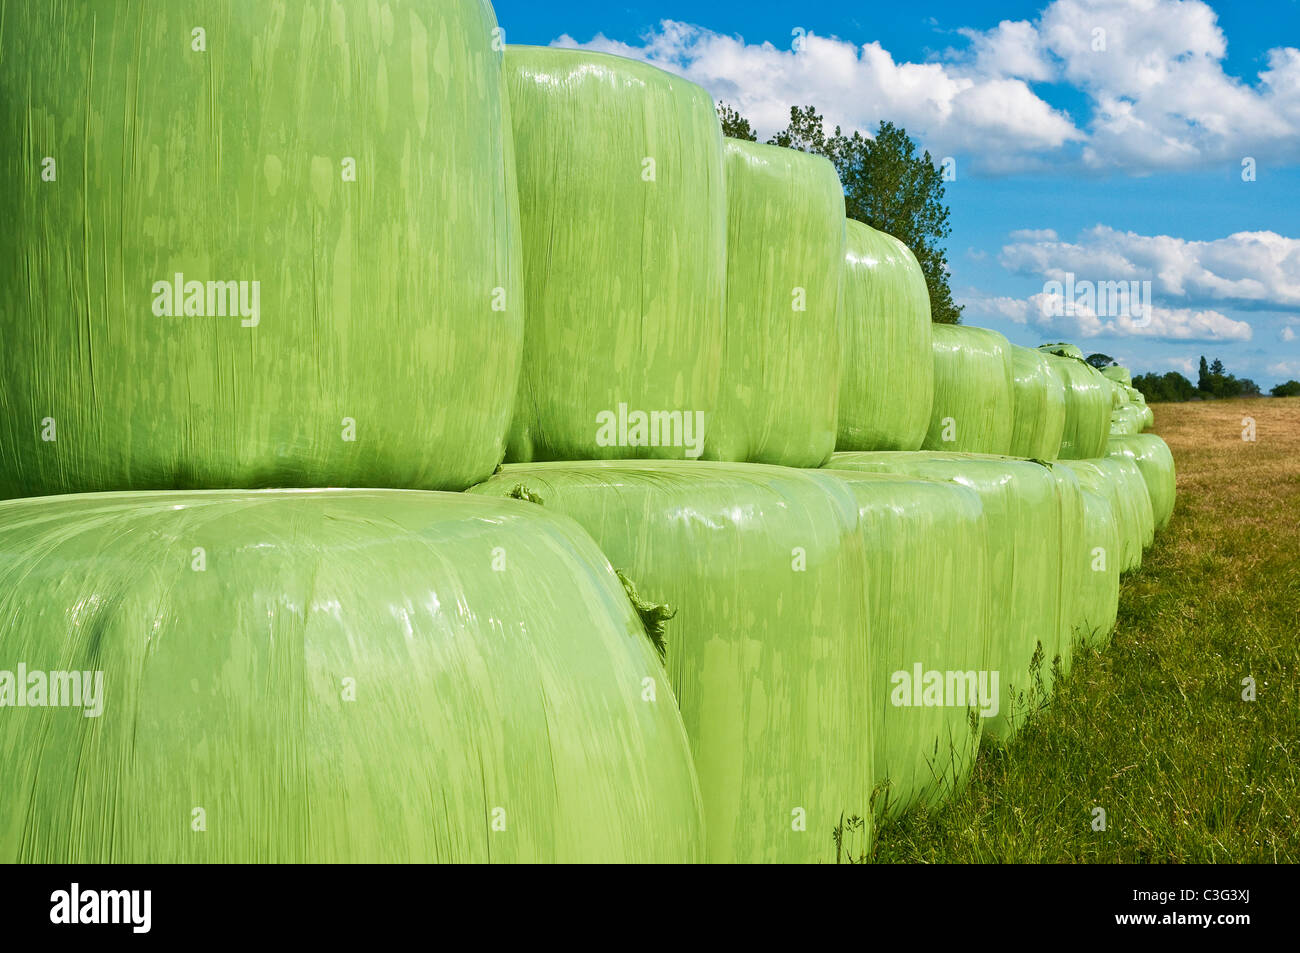 Green Polyethylen bedeckt Ballen Silage für Rinder Futter - Frankreich. Stockfoto